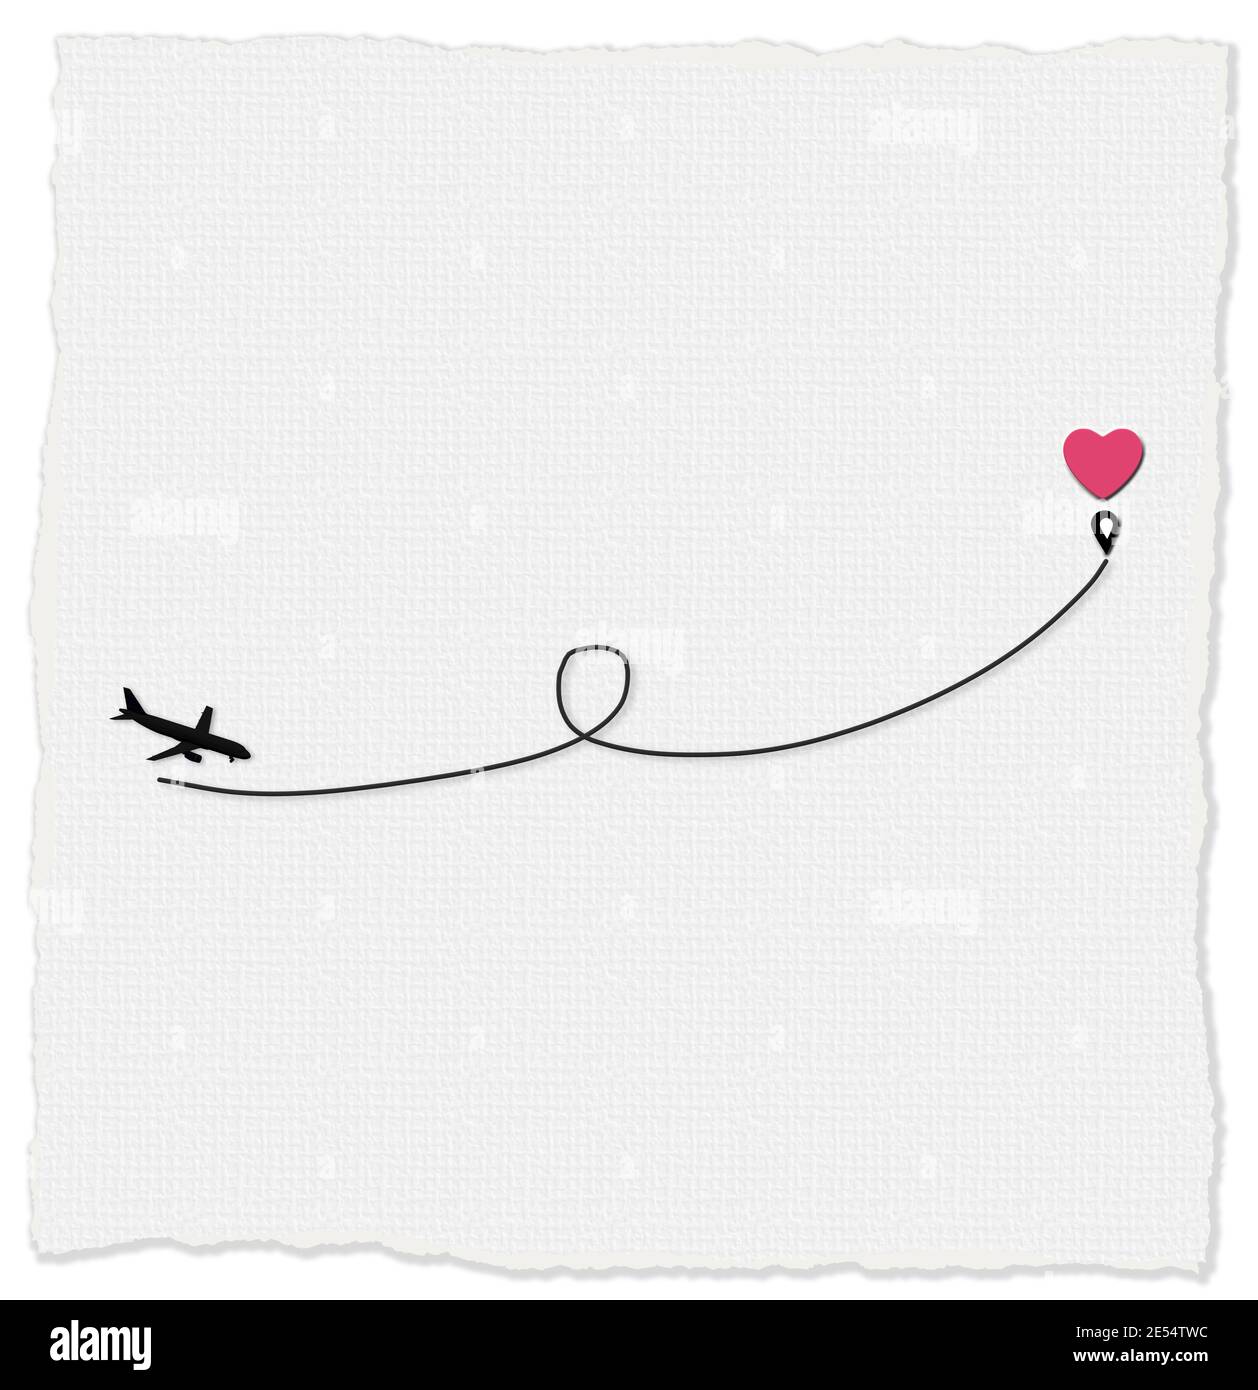 Liebe Flugzeug Route zum Zielpunkt rosa Herz. Romantische Reise, Herz, Flugzeug Route, Weg. Valentinskarte, Liebeskonzept, isoliert auf weißem Hintergrund Stockfoto